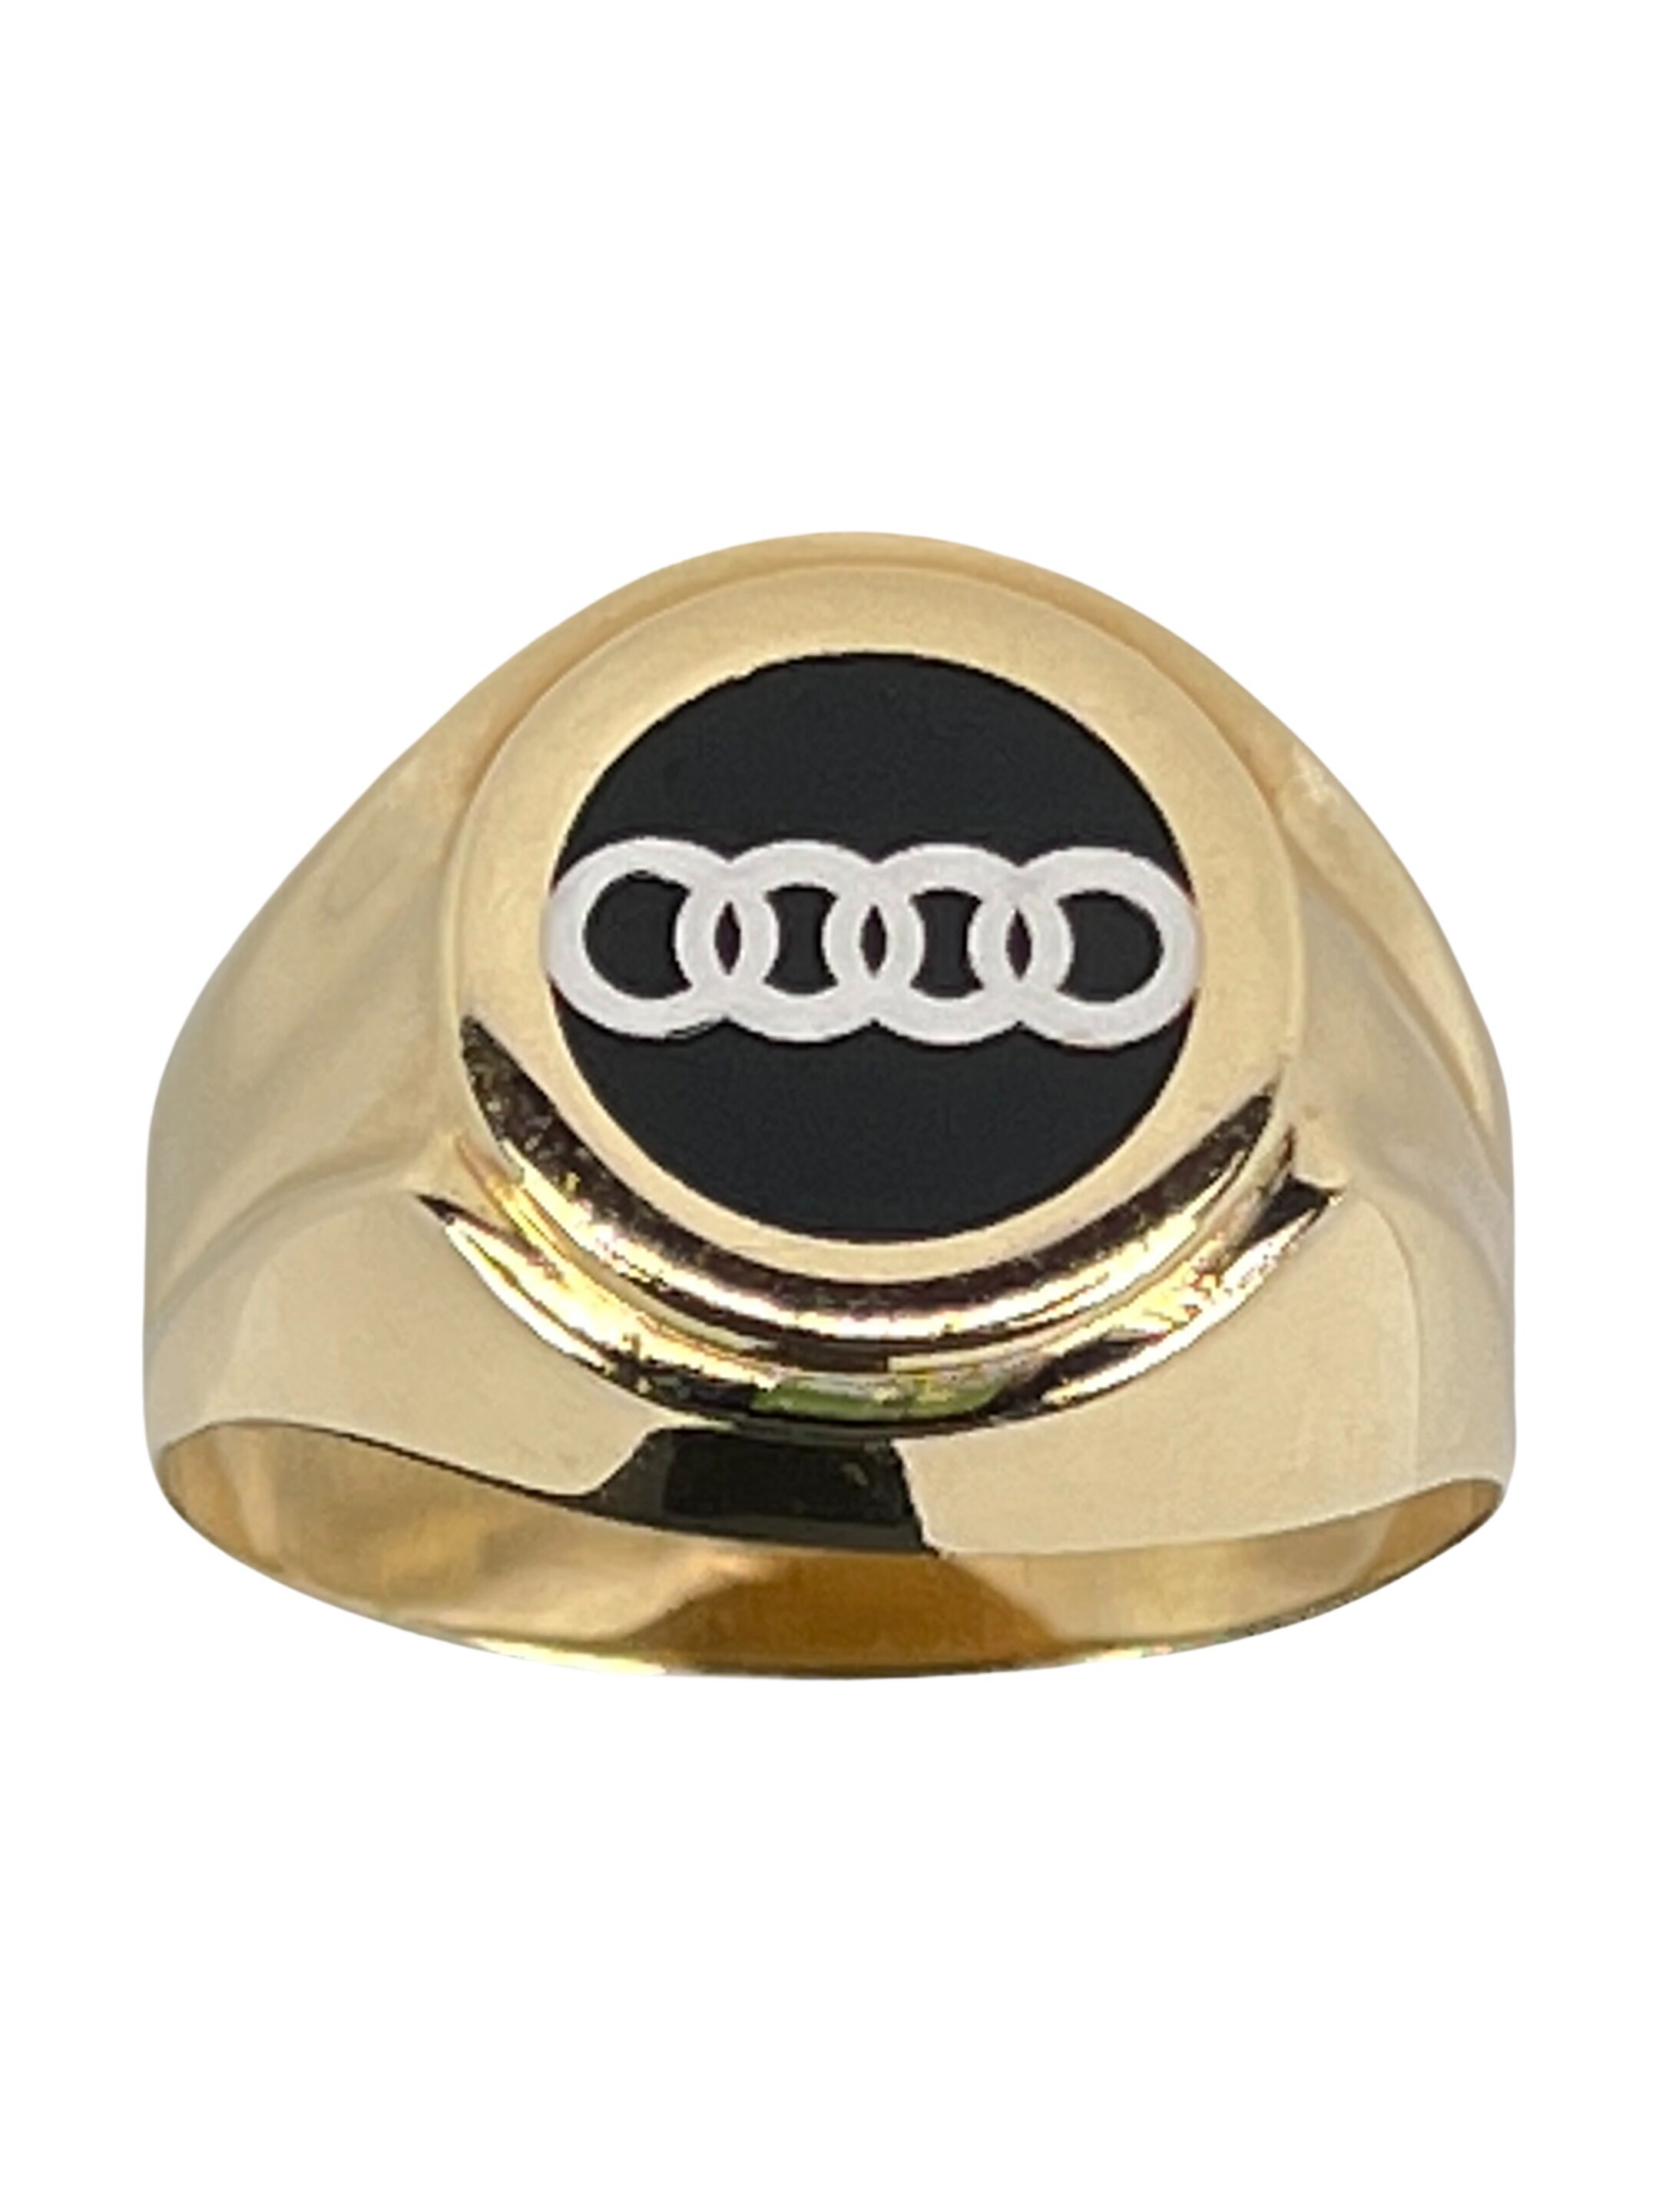 Zlat prstan z logotipom